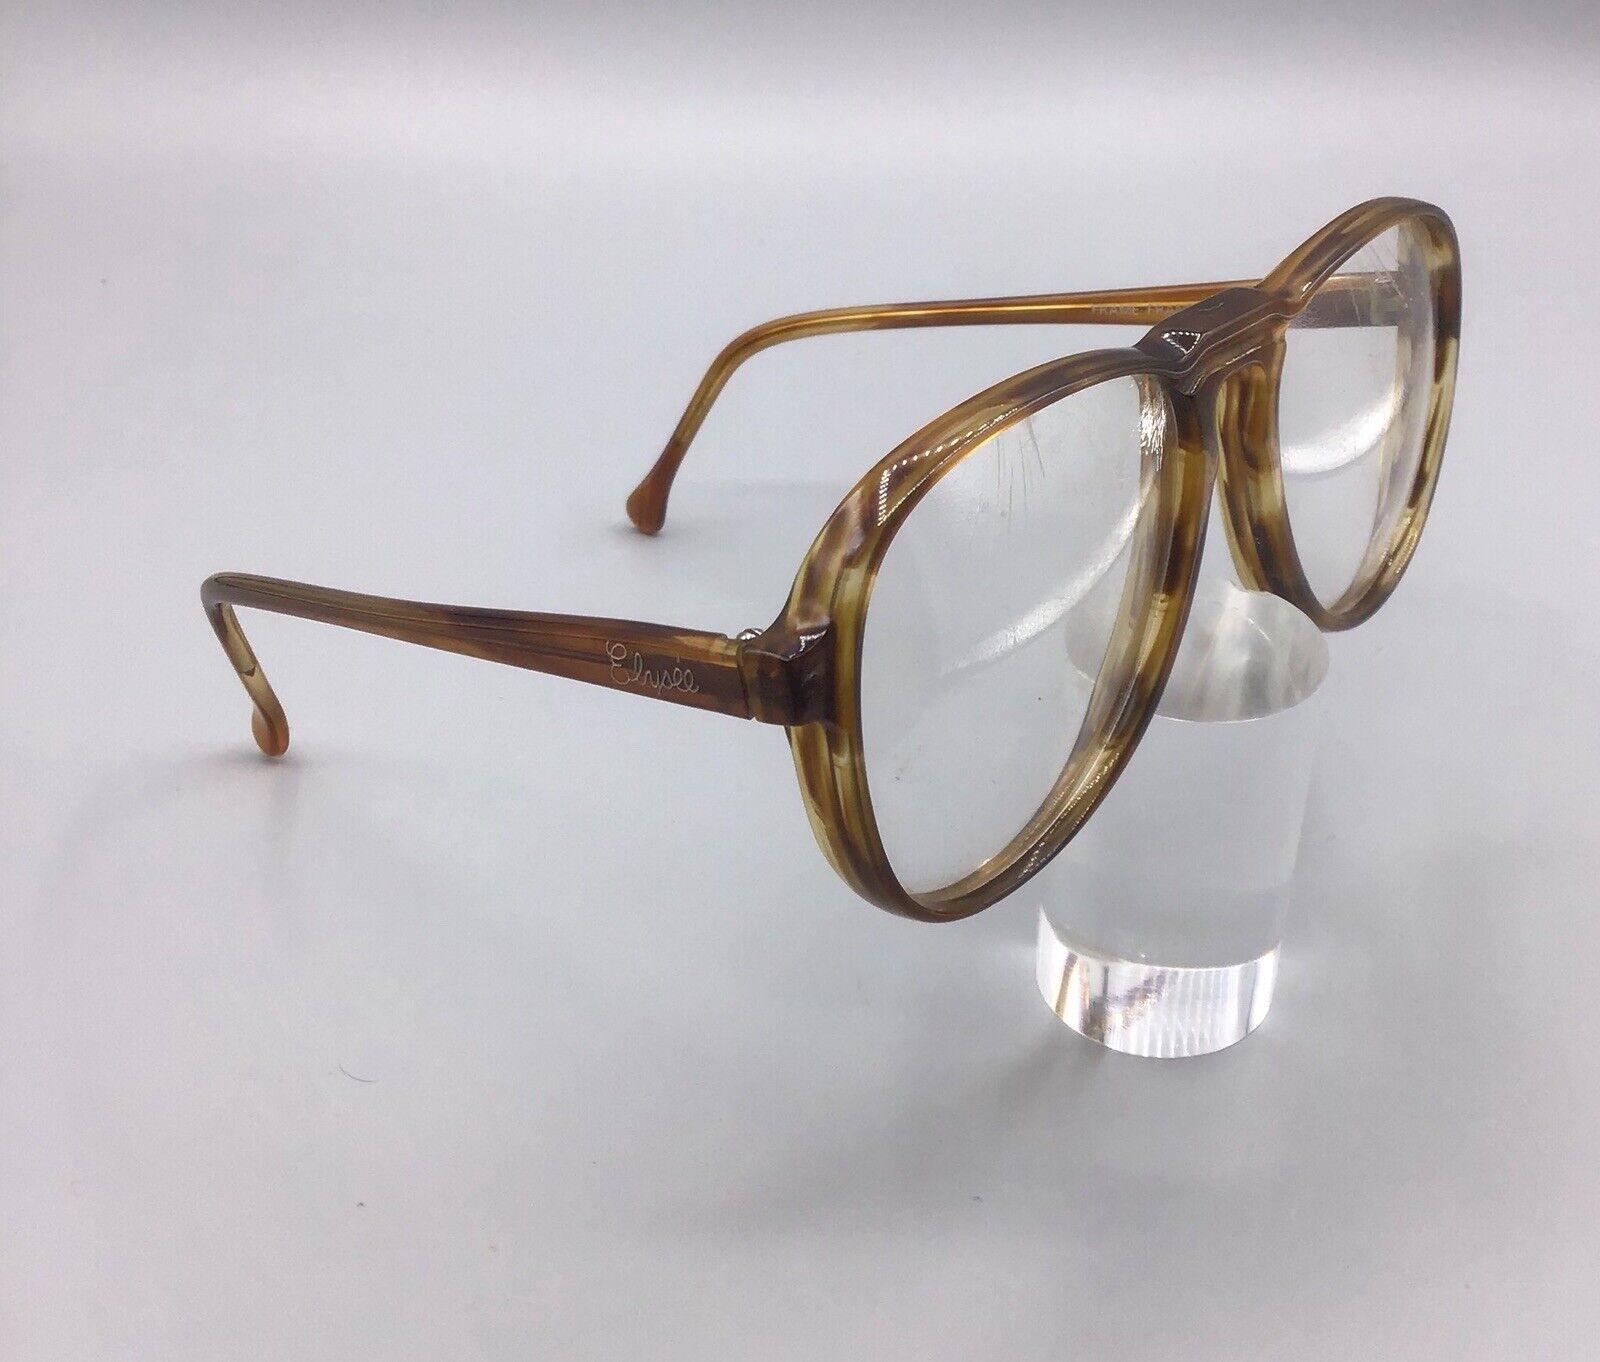 Frame France occhiale vintage c.53281 n.323 eyeglasses lunettes